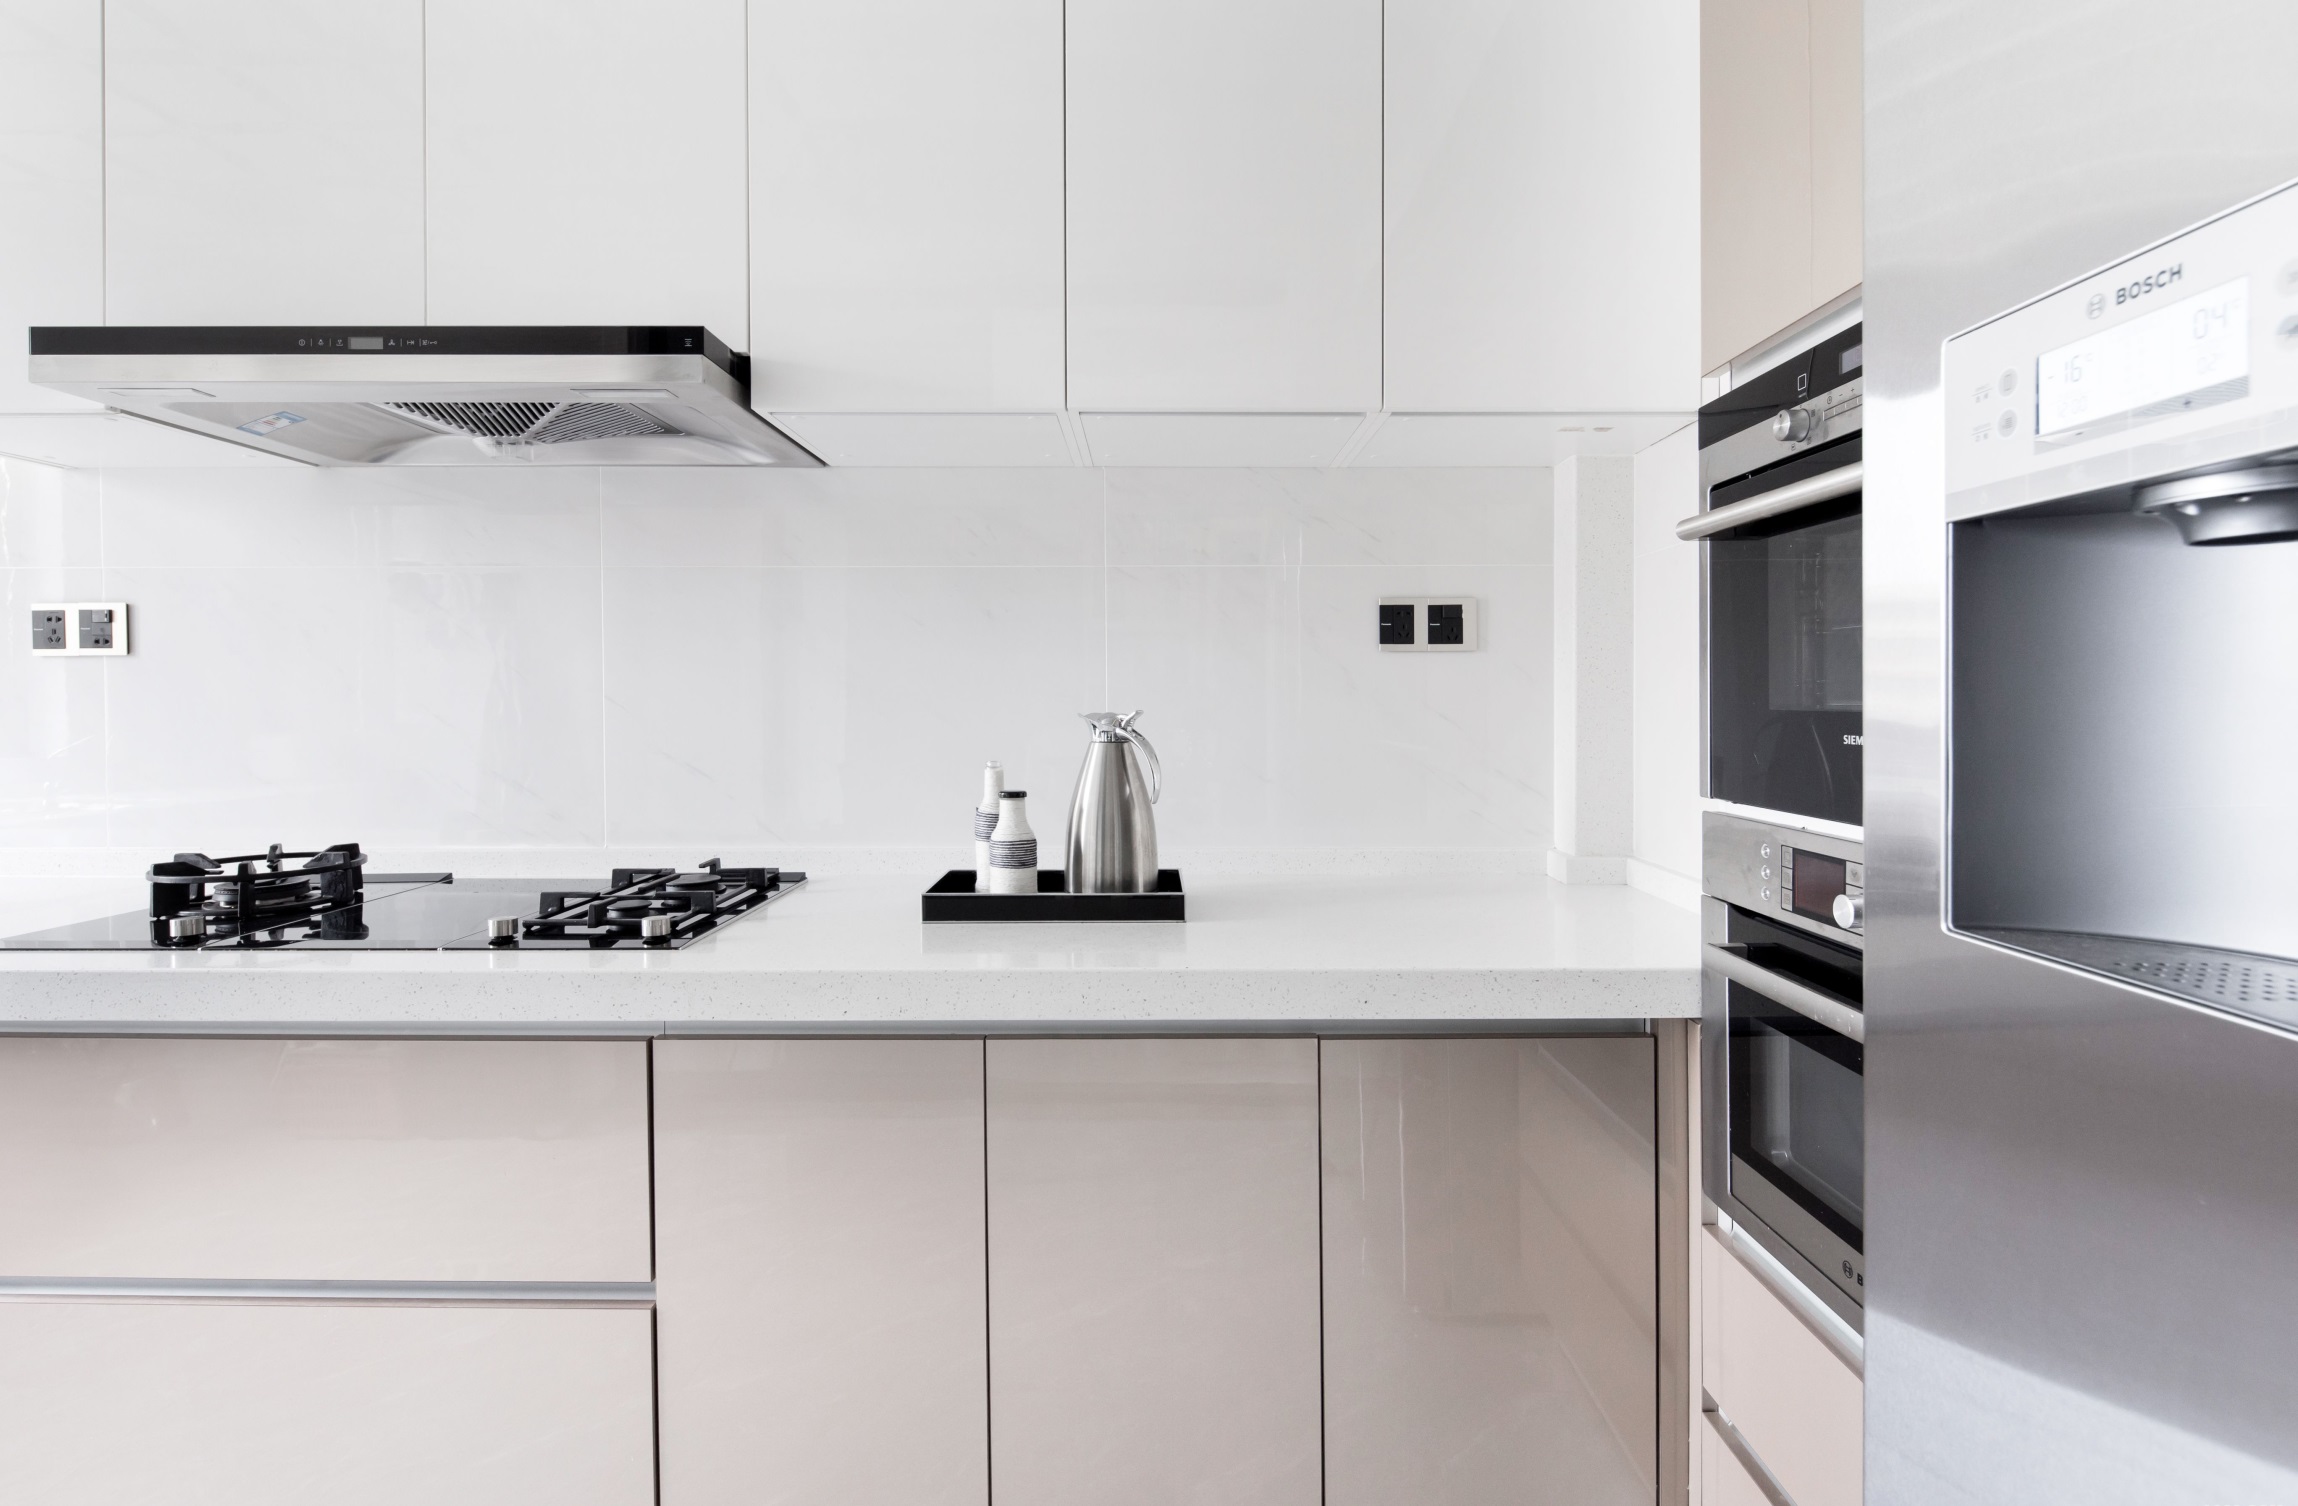 空间赋予厨房较好的光线，米丝儿橱柜充满高级情调，看上去精致华贵。